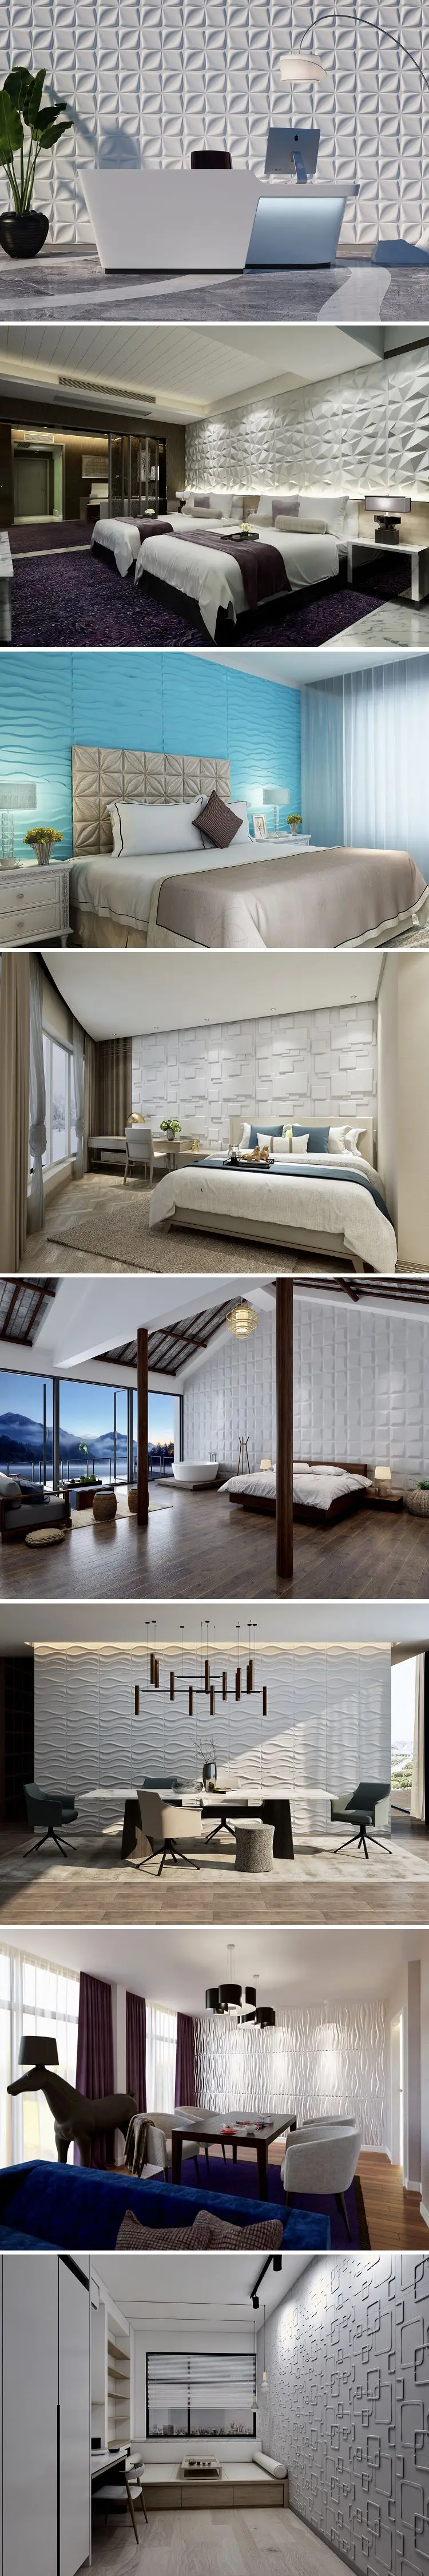 Modern Wall Art Decor Interior 3d Effect Wall Panels For Home ...